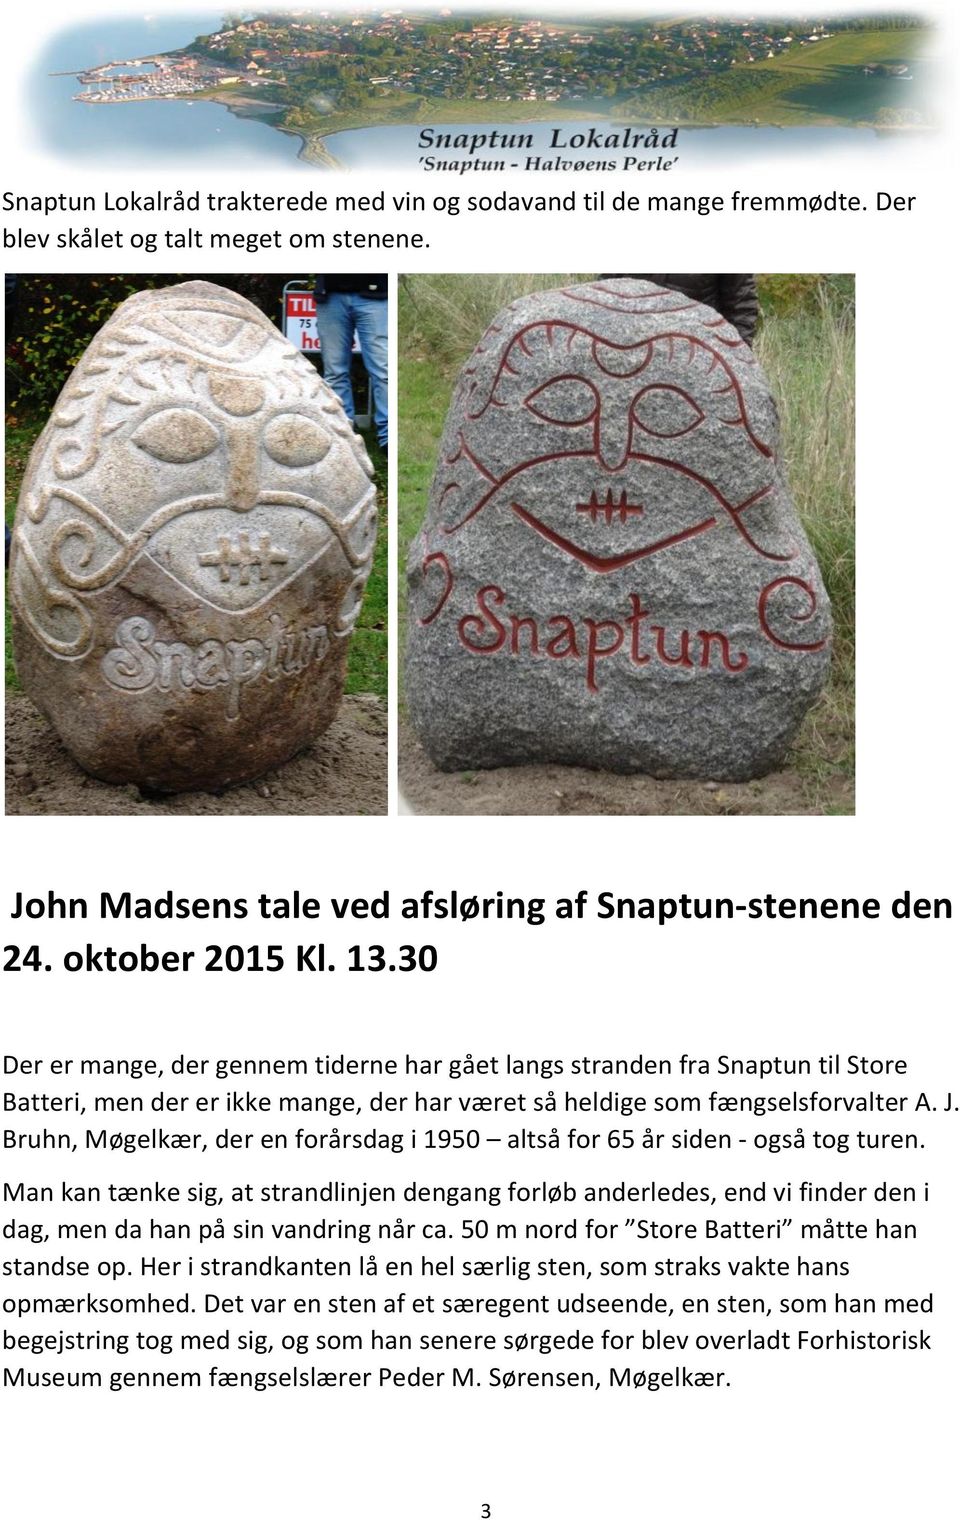 Afsløring af to Snaptun-sten lørdag den 24. oktober PDF Free Download